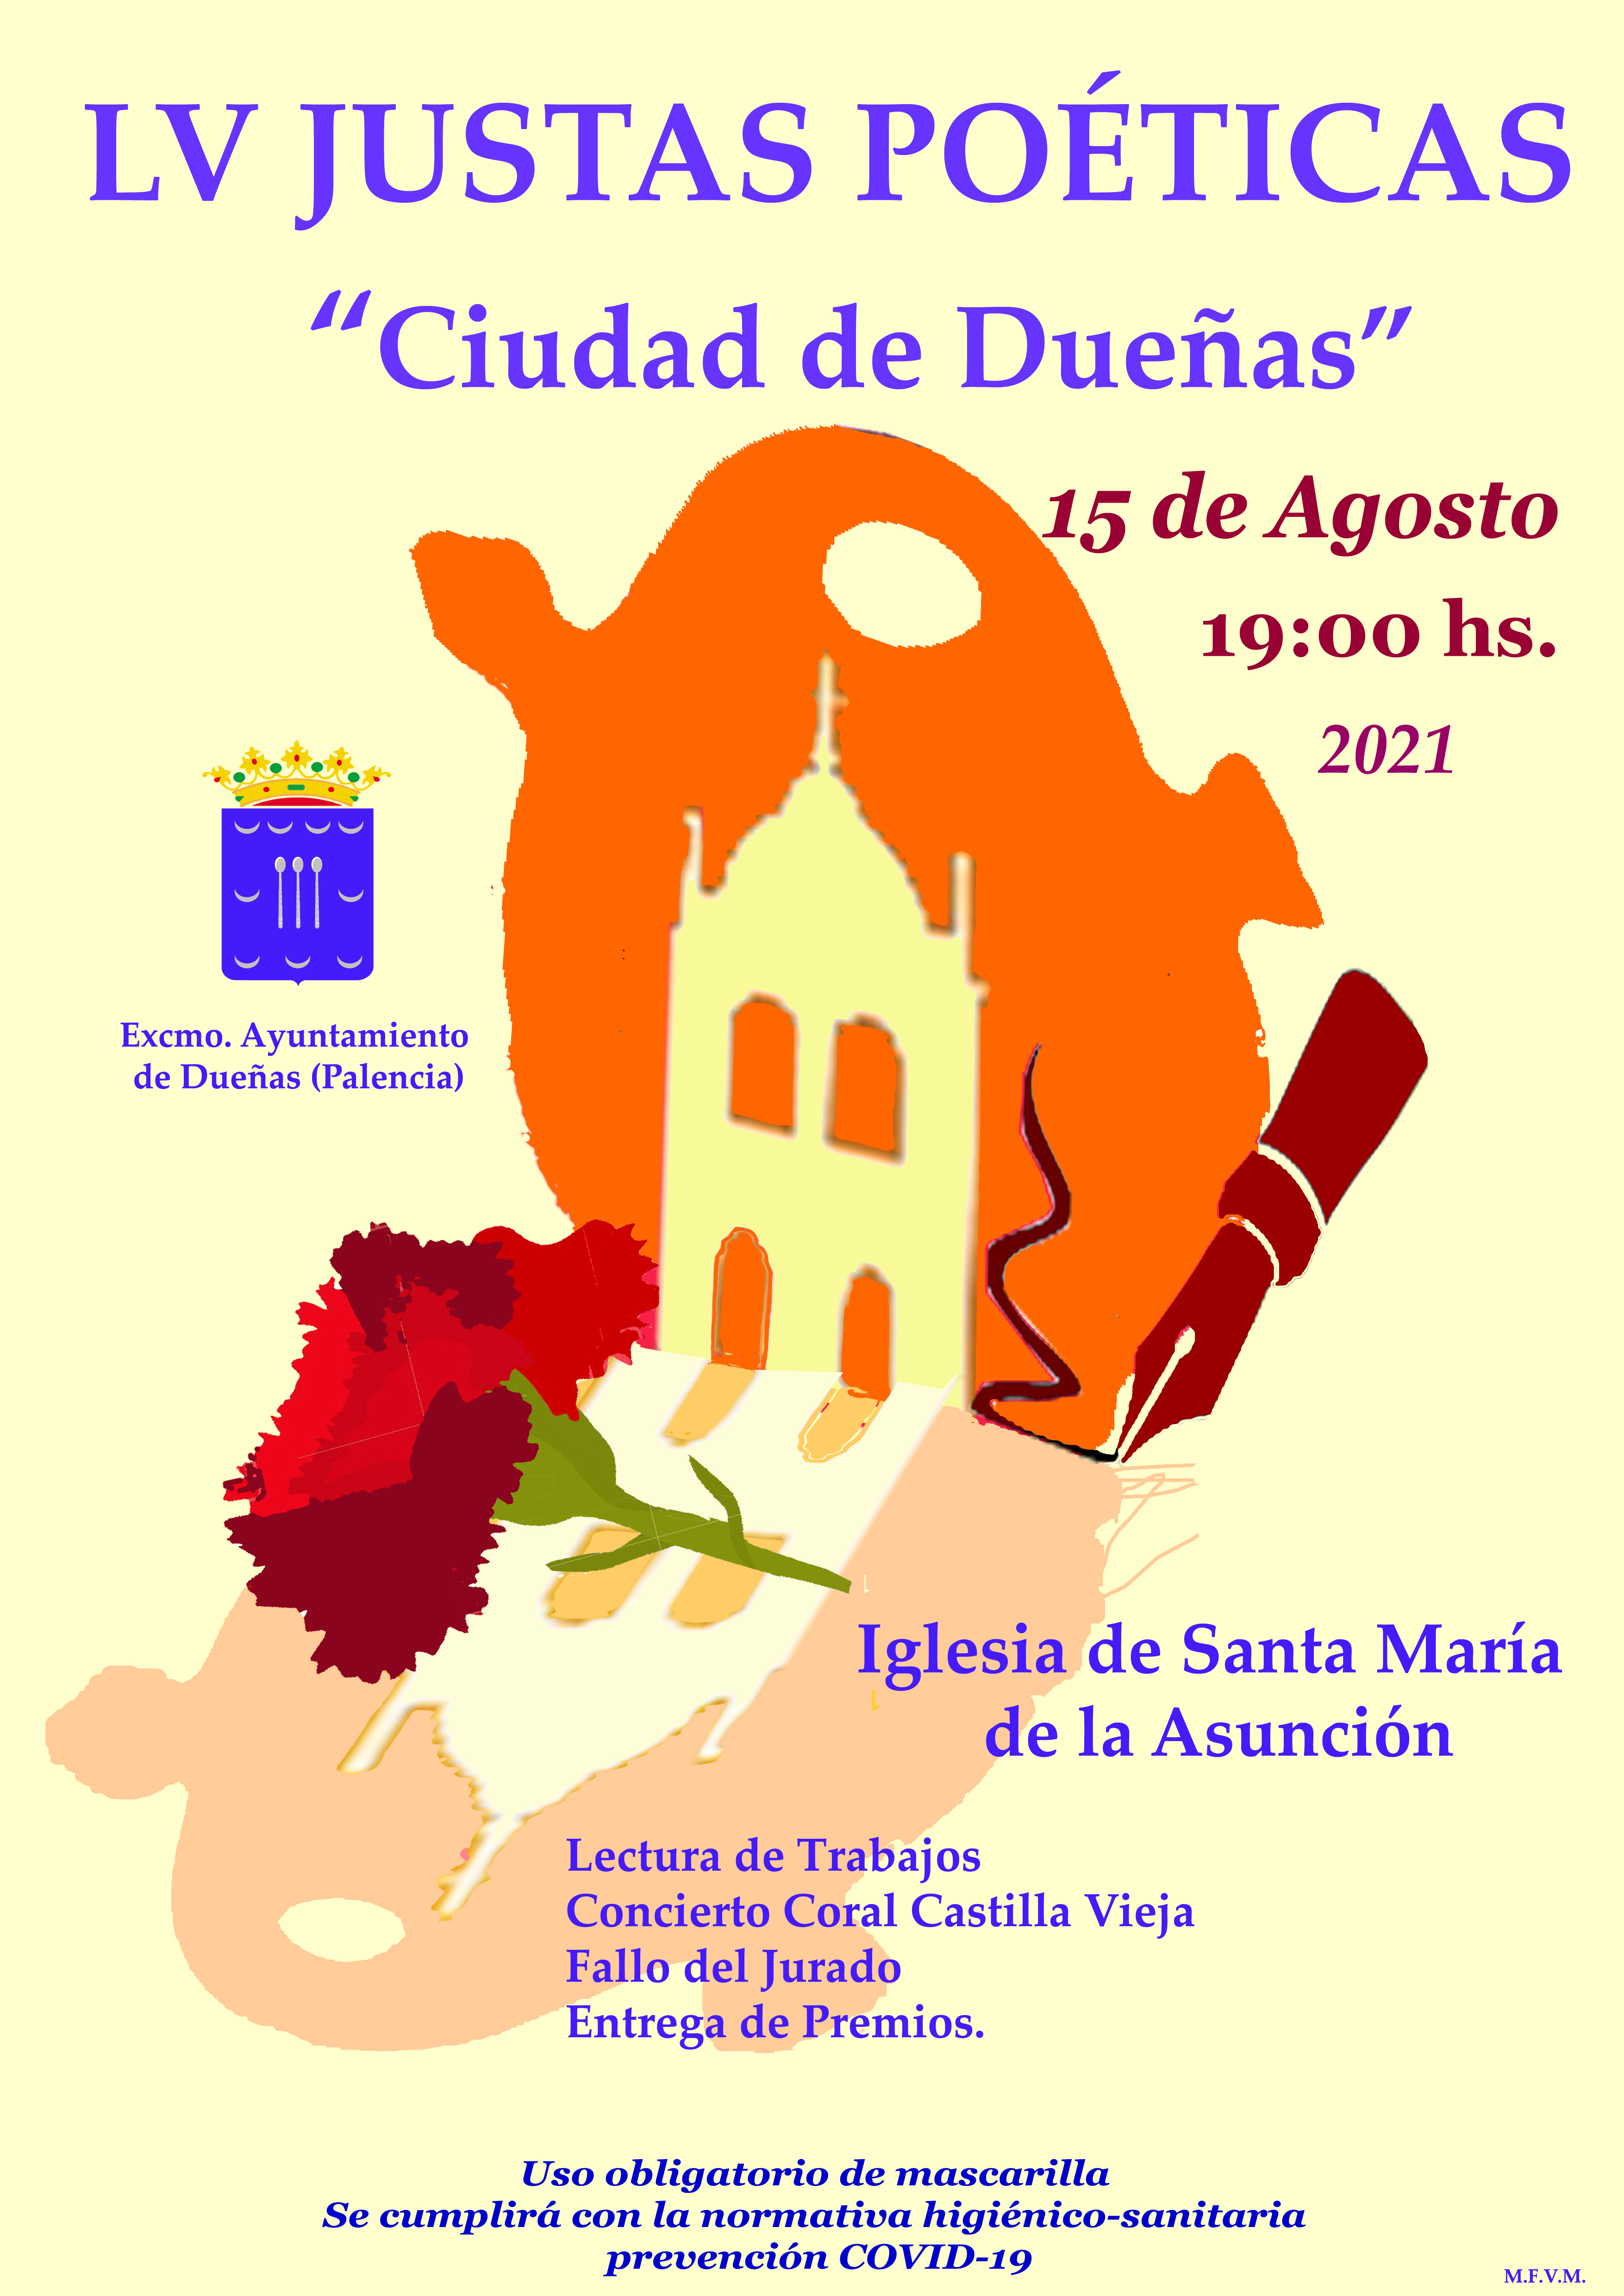 15 de agosto de 2021: Justas Poéticas «Ciudad de Dueñas». Iglesia de Santa María de la Asunción,19:00 hs.